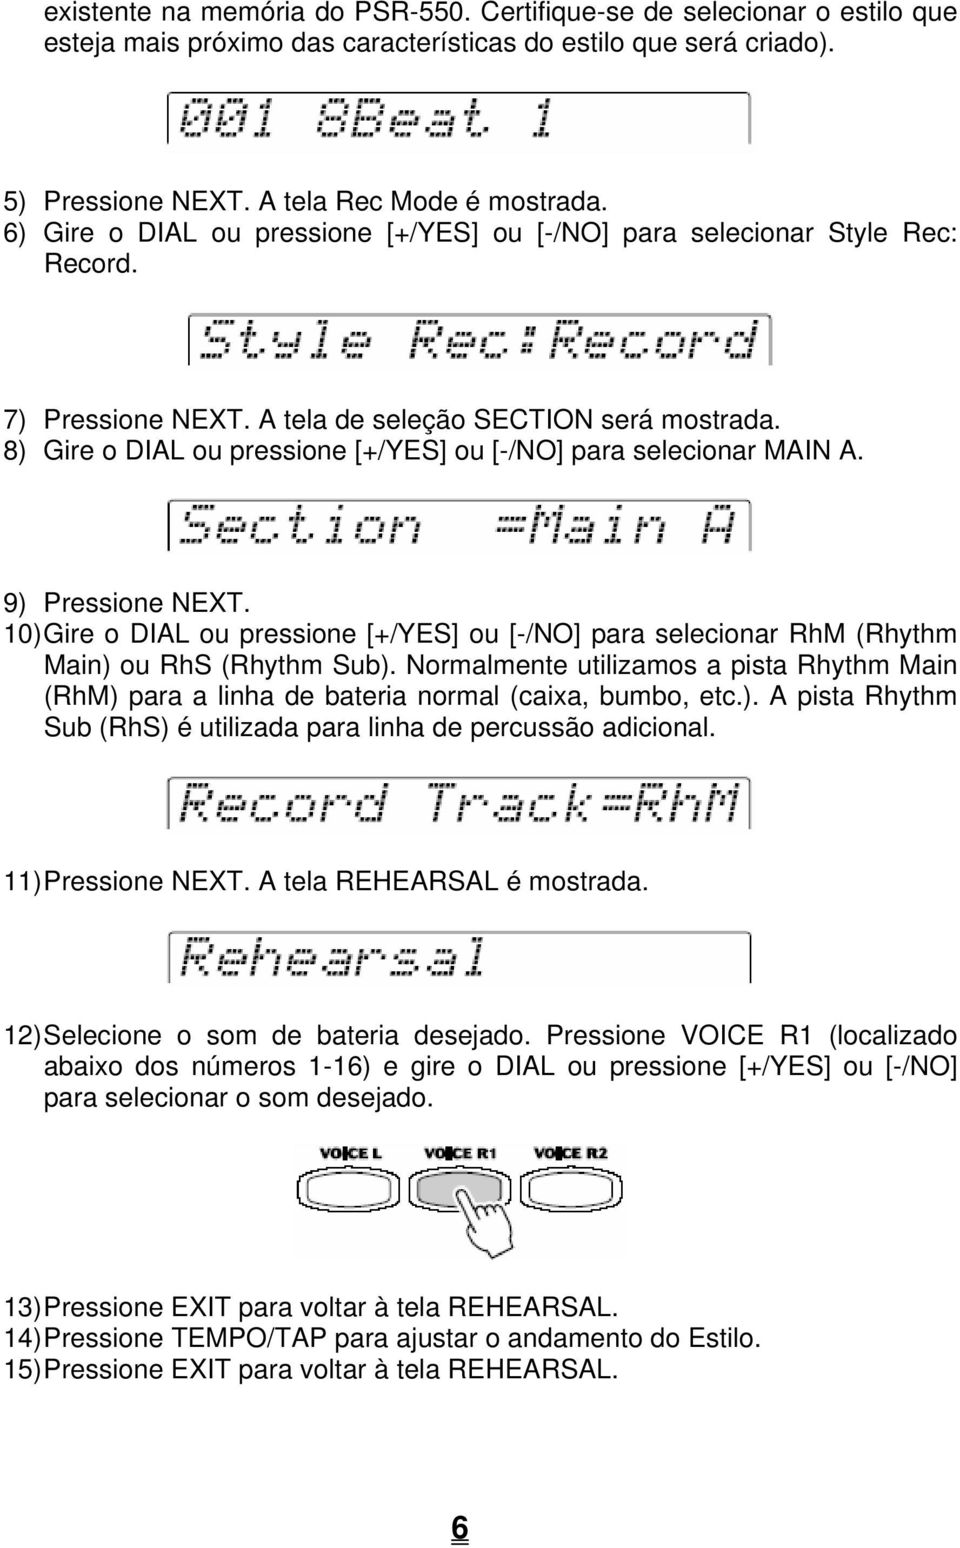 8) Gire o DIAL ou pressione [+/YES] ou [-/NO] para selecionar MAIN A. 9) Pressione NEXT. 10) Gire o DIAL ou pressione [+/YES] ou [-/NO] para selecionar RhM (Rhythm Main) ou RhS (Rhythm Sub).